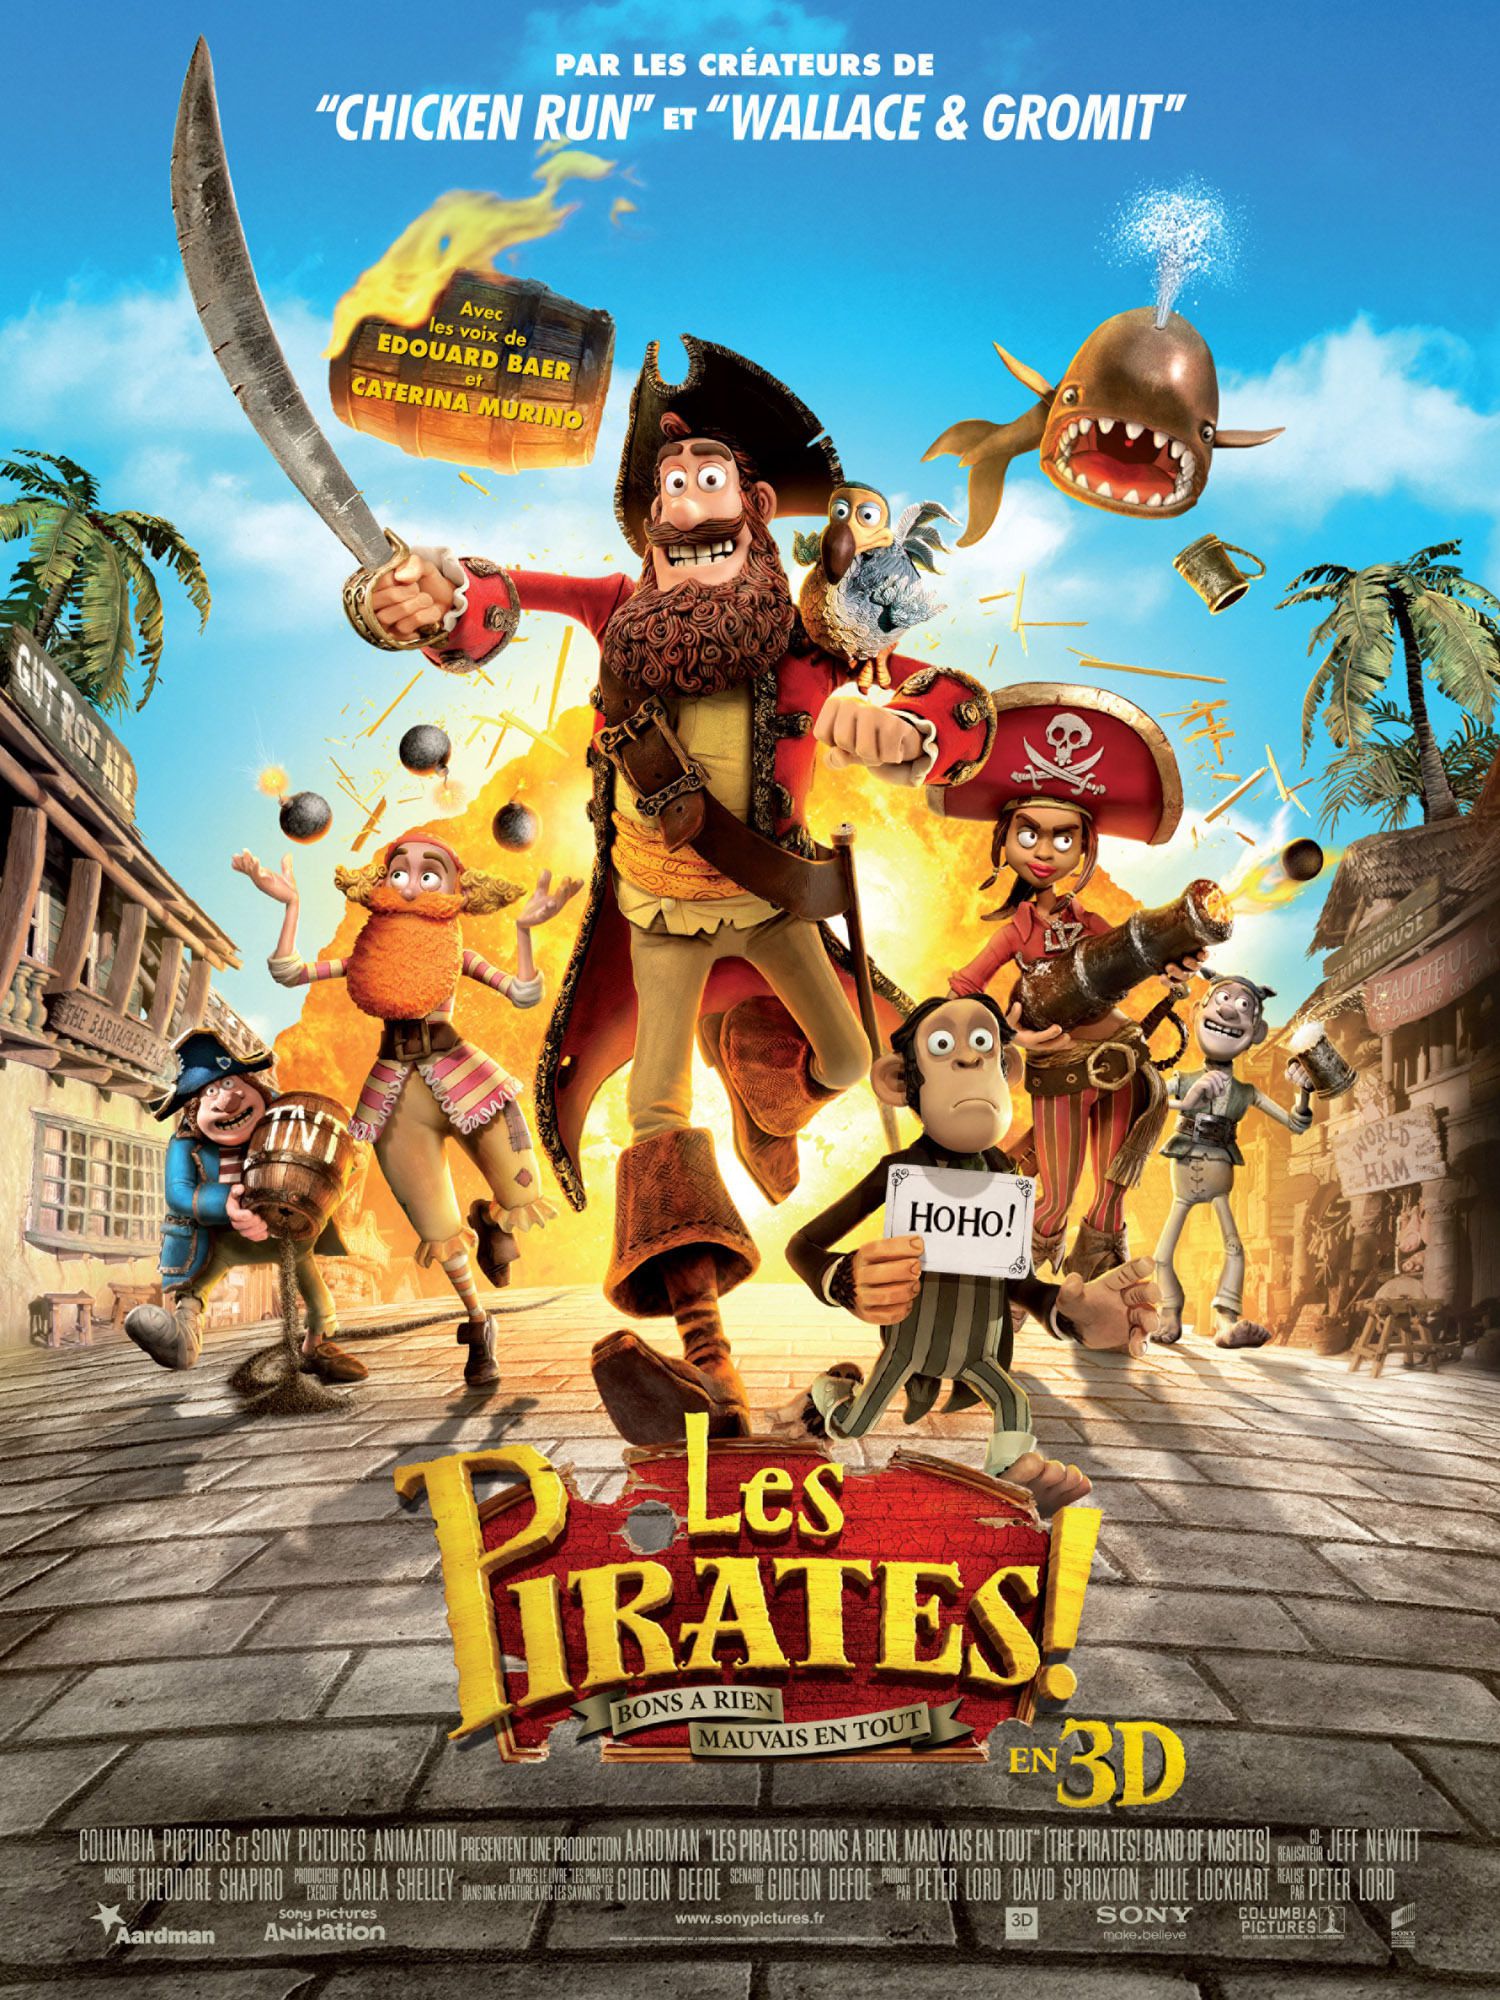 Les Pirates ! Bons à rien, mauvais en tout - Long-métrage d'animation (2012) streaming VF gratuit complet